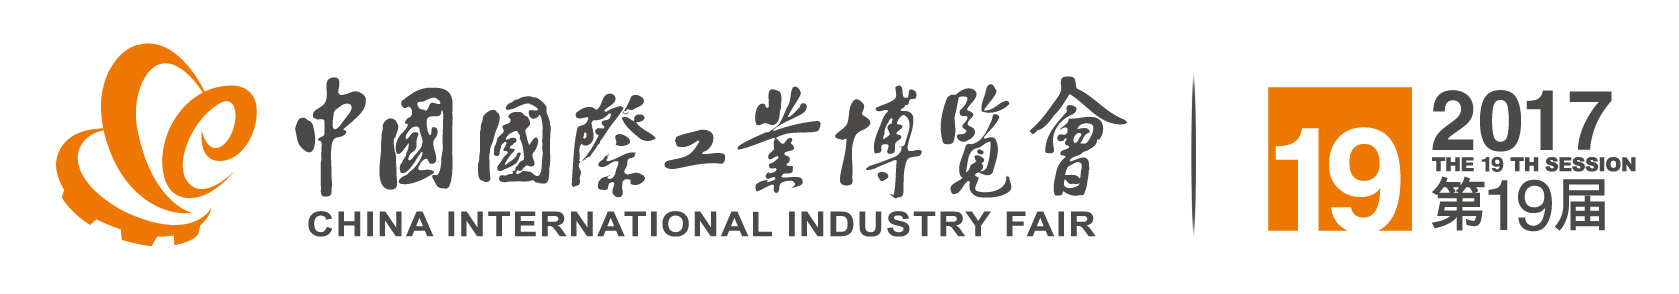 2017机床展MWCS上海工博会